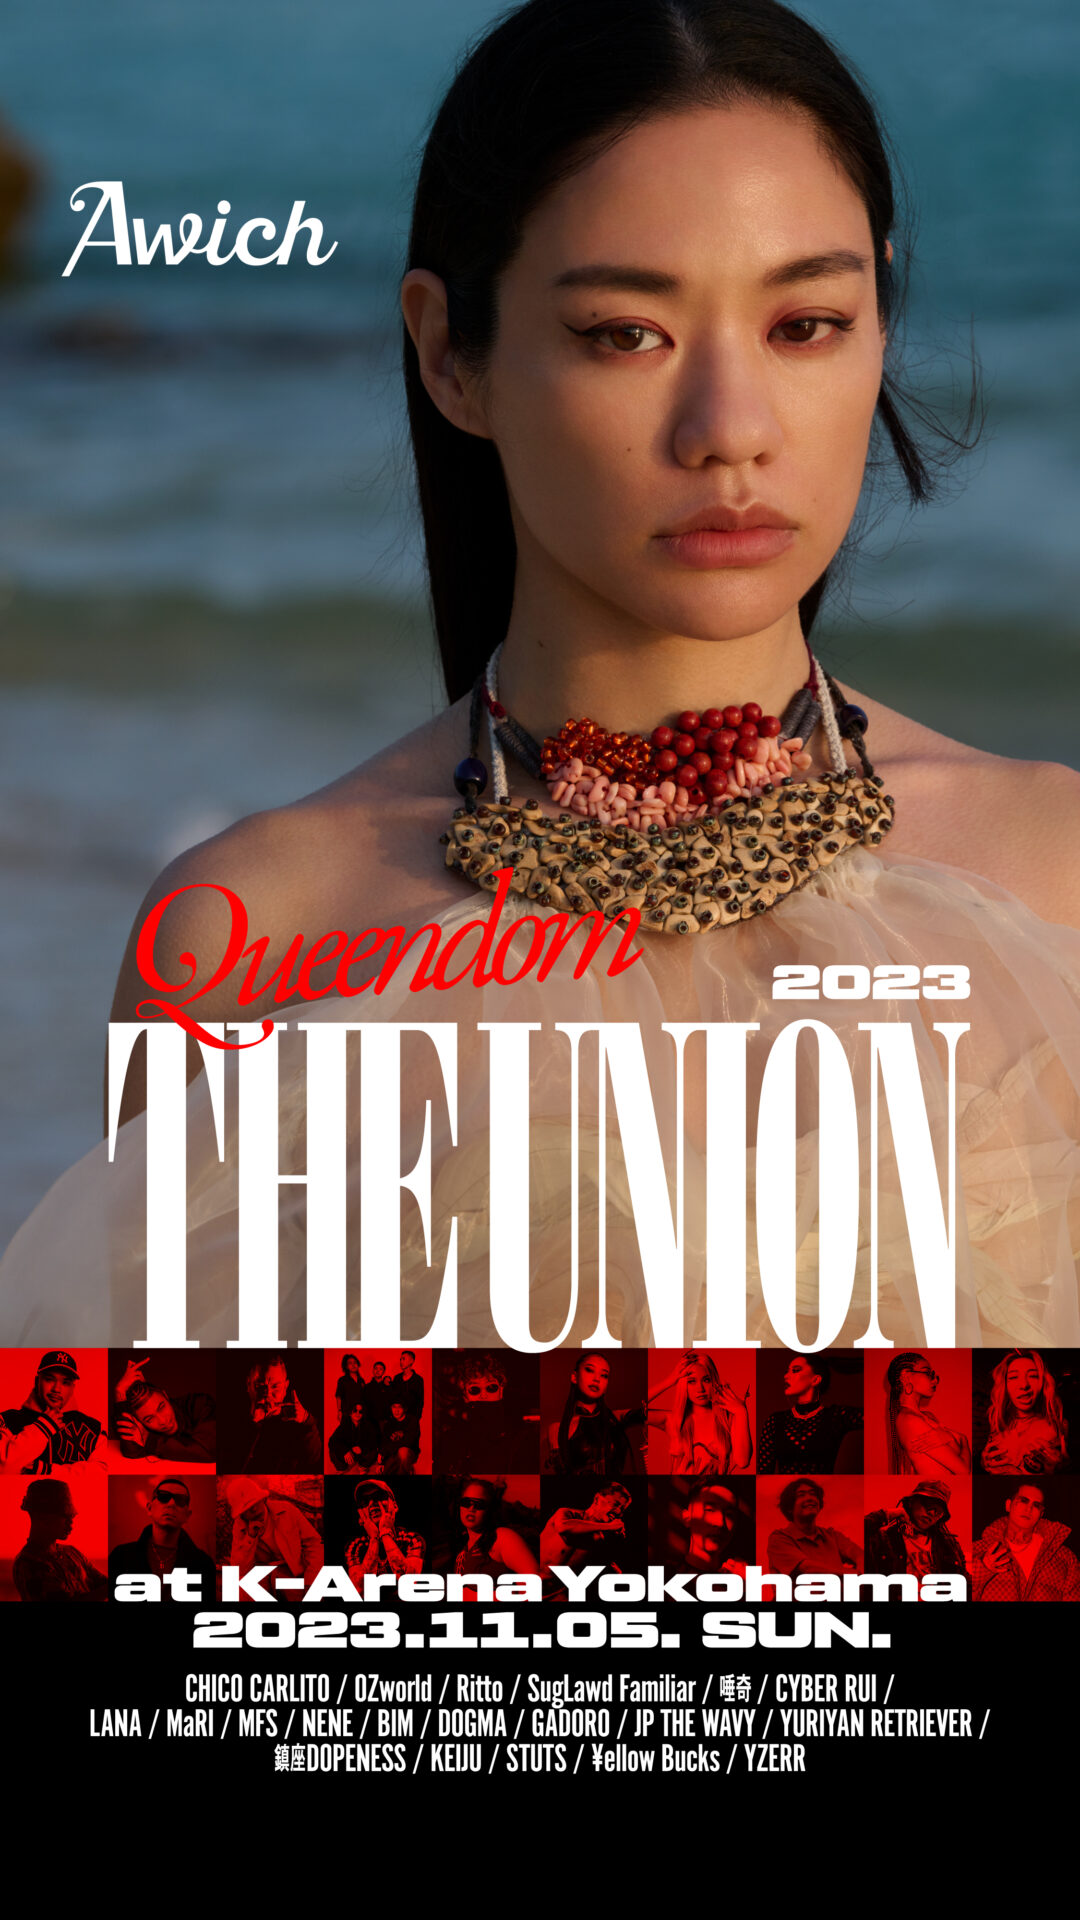 売れ済銀座 awich ポスター THE UNION - CD